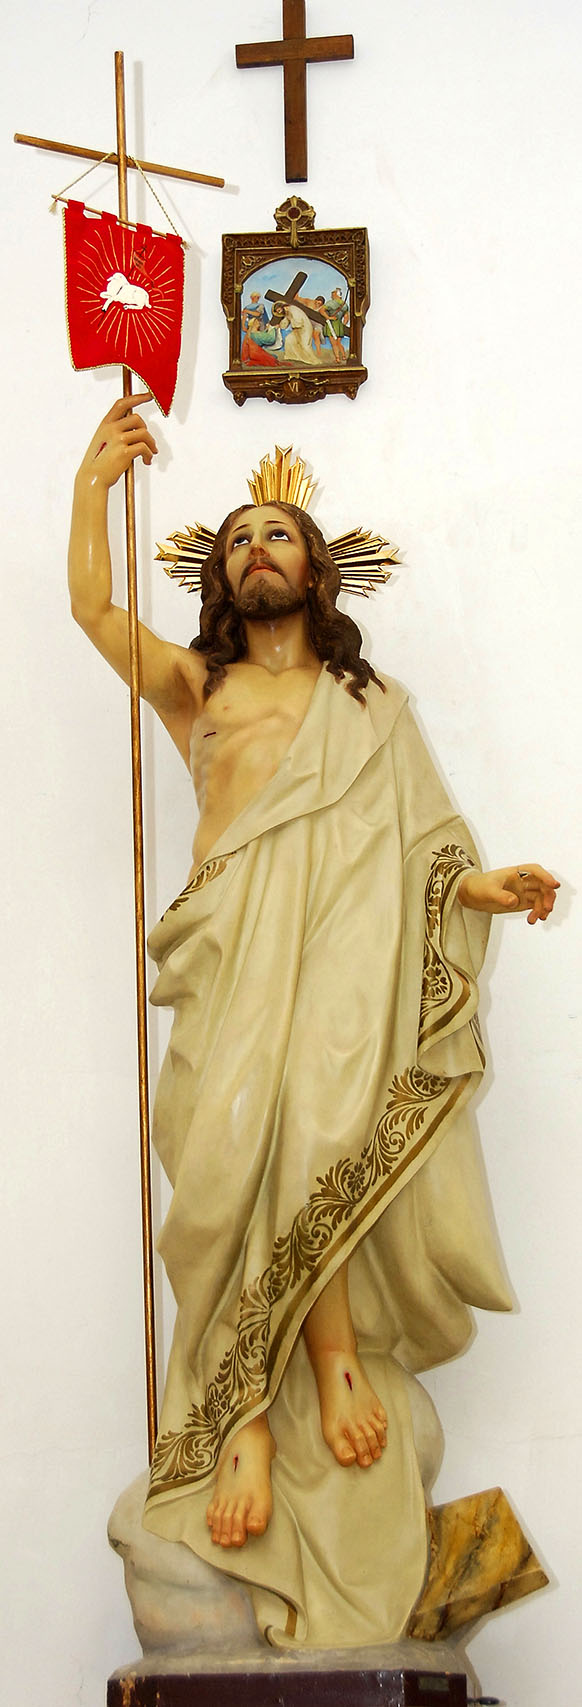 Imagen de Jesús Resucitado en la Parroquia de Santa María Magdalena de Burguillos de Toledo